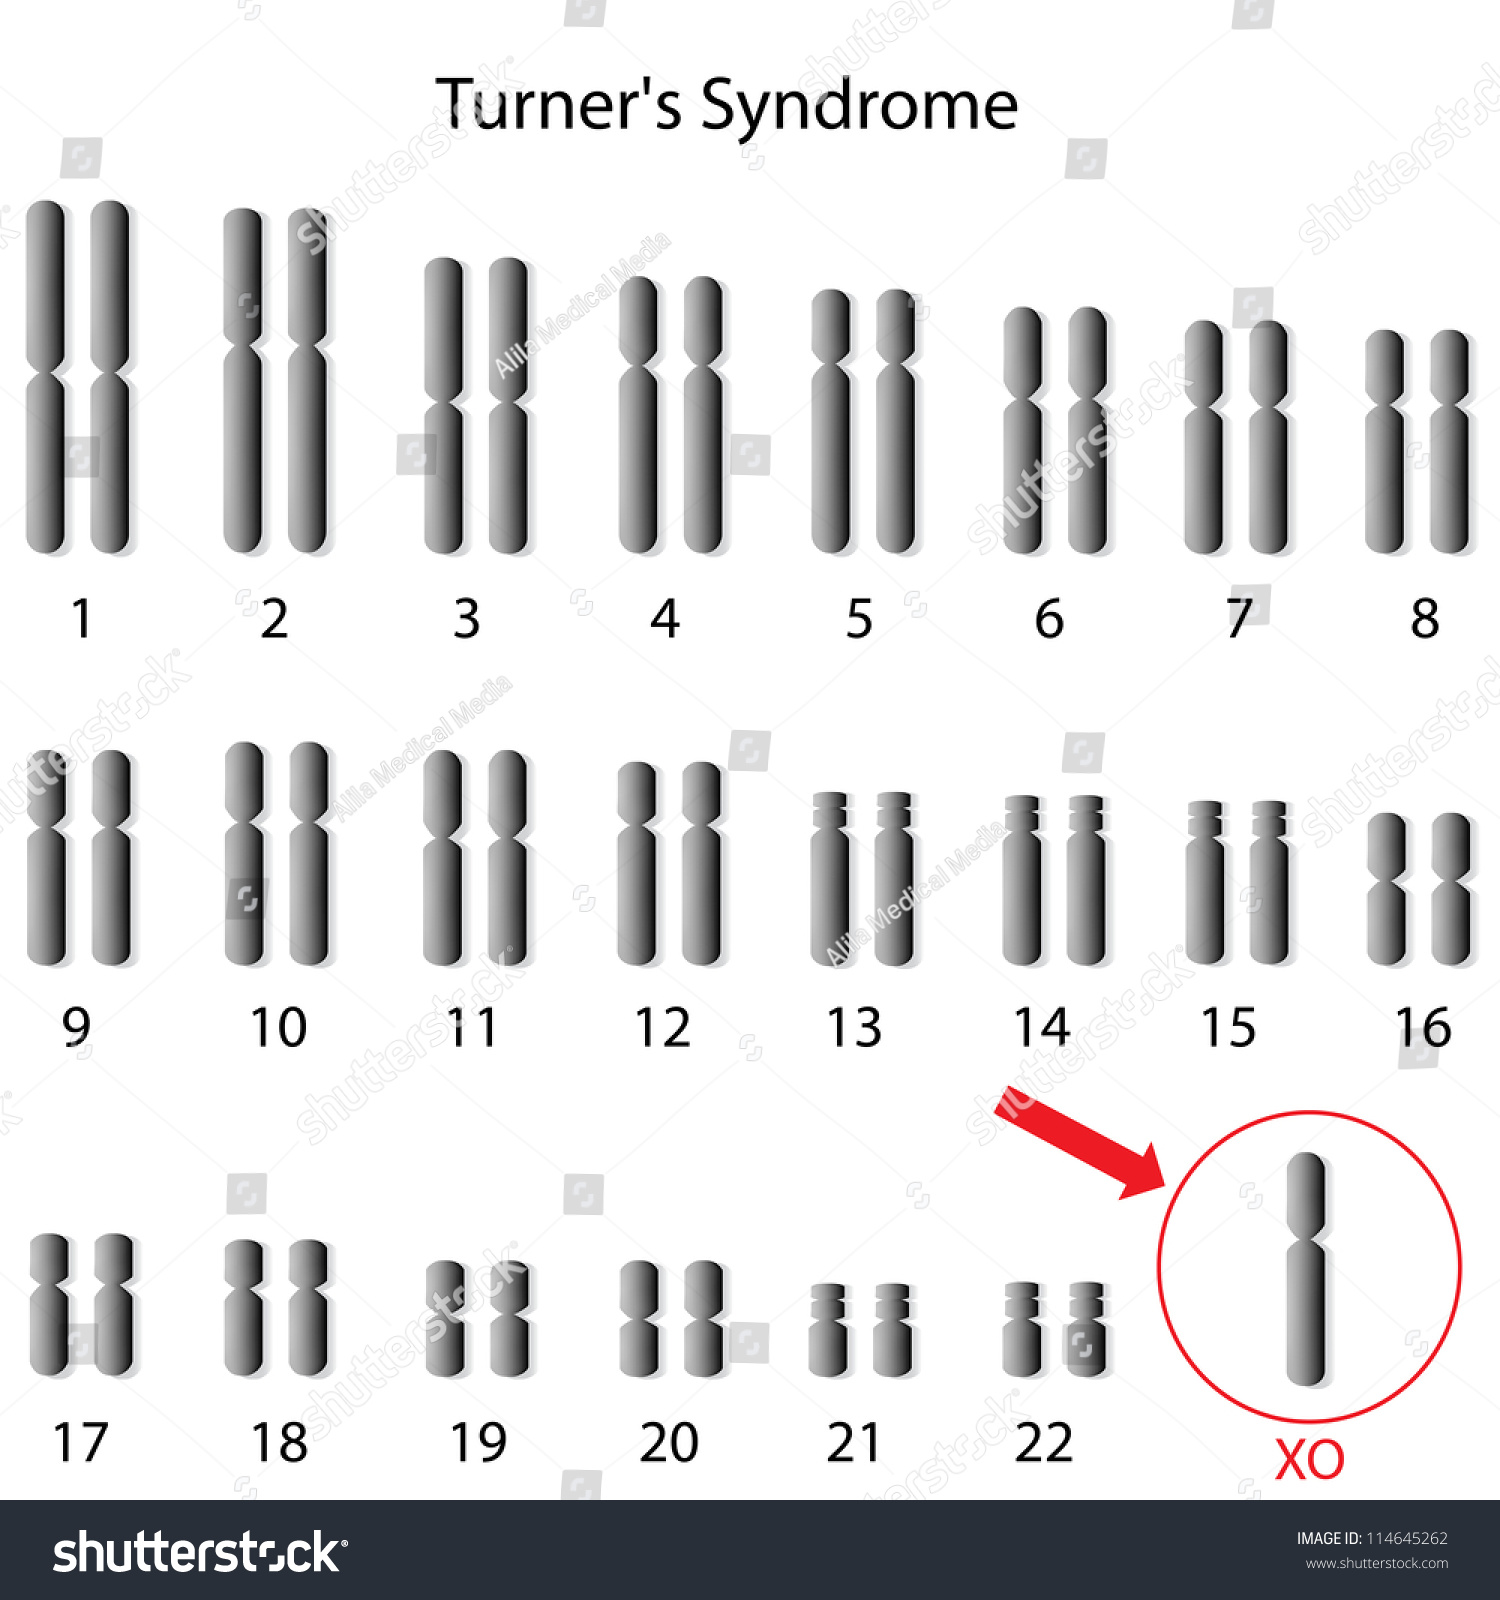 Monosomy X Turner Syndrome Stock Illustration 114645262 Shutterstock